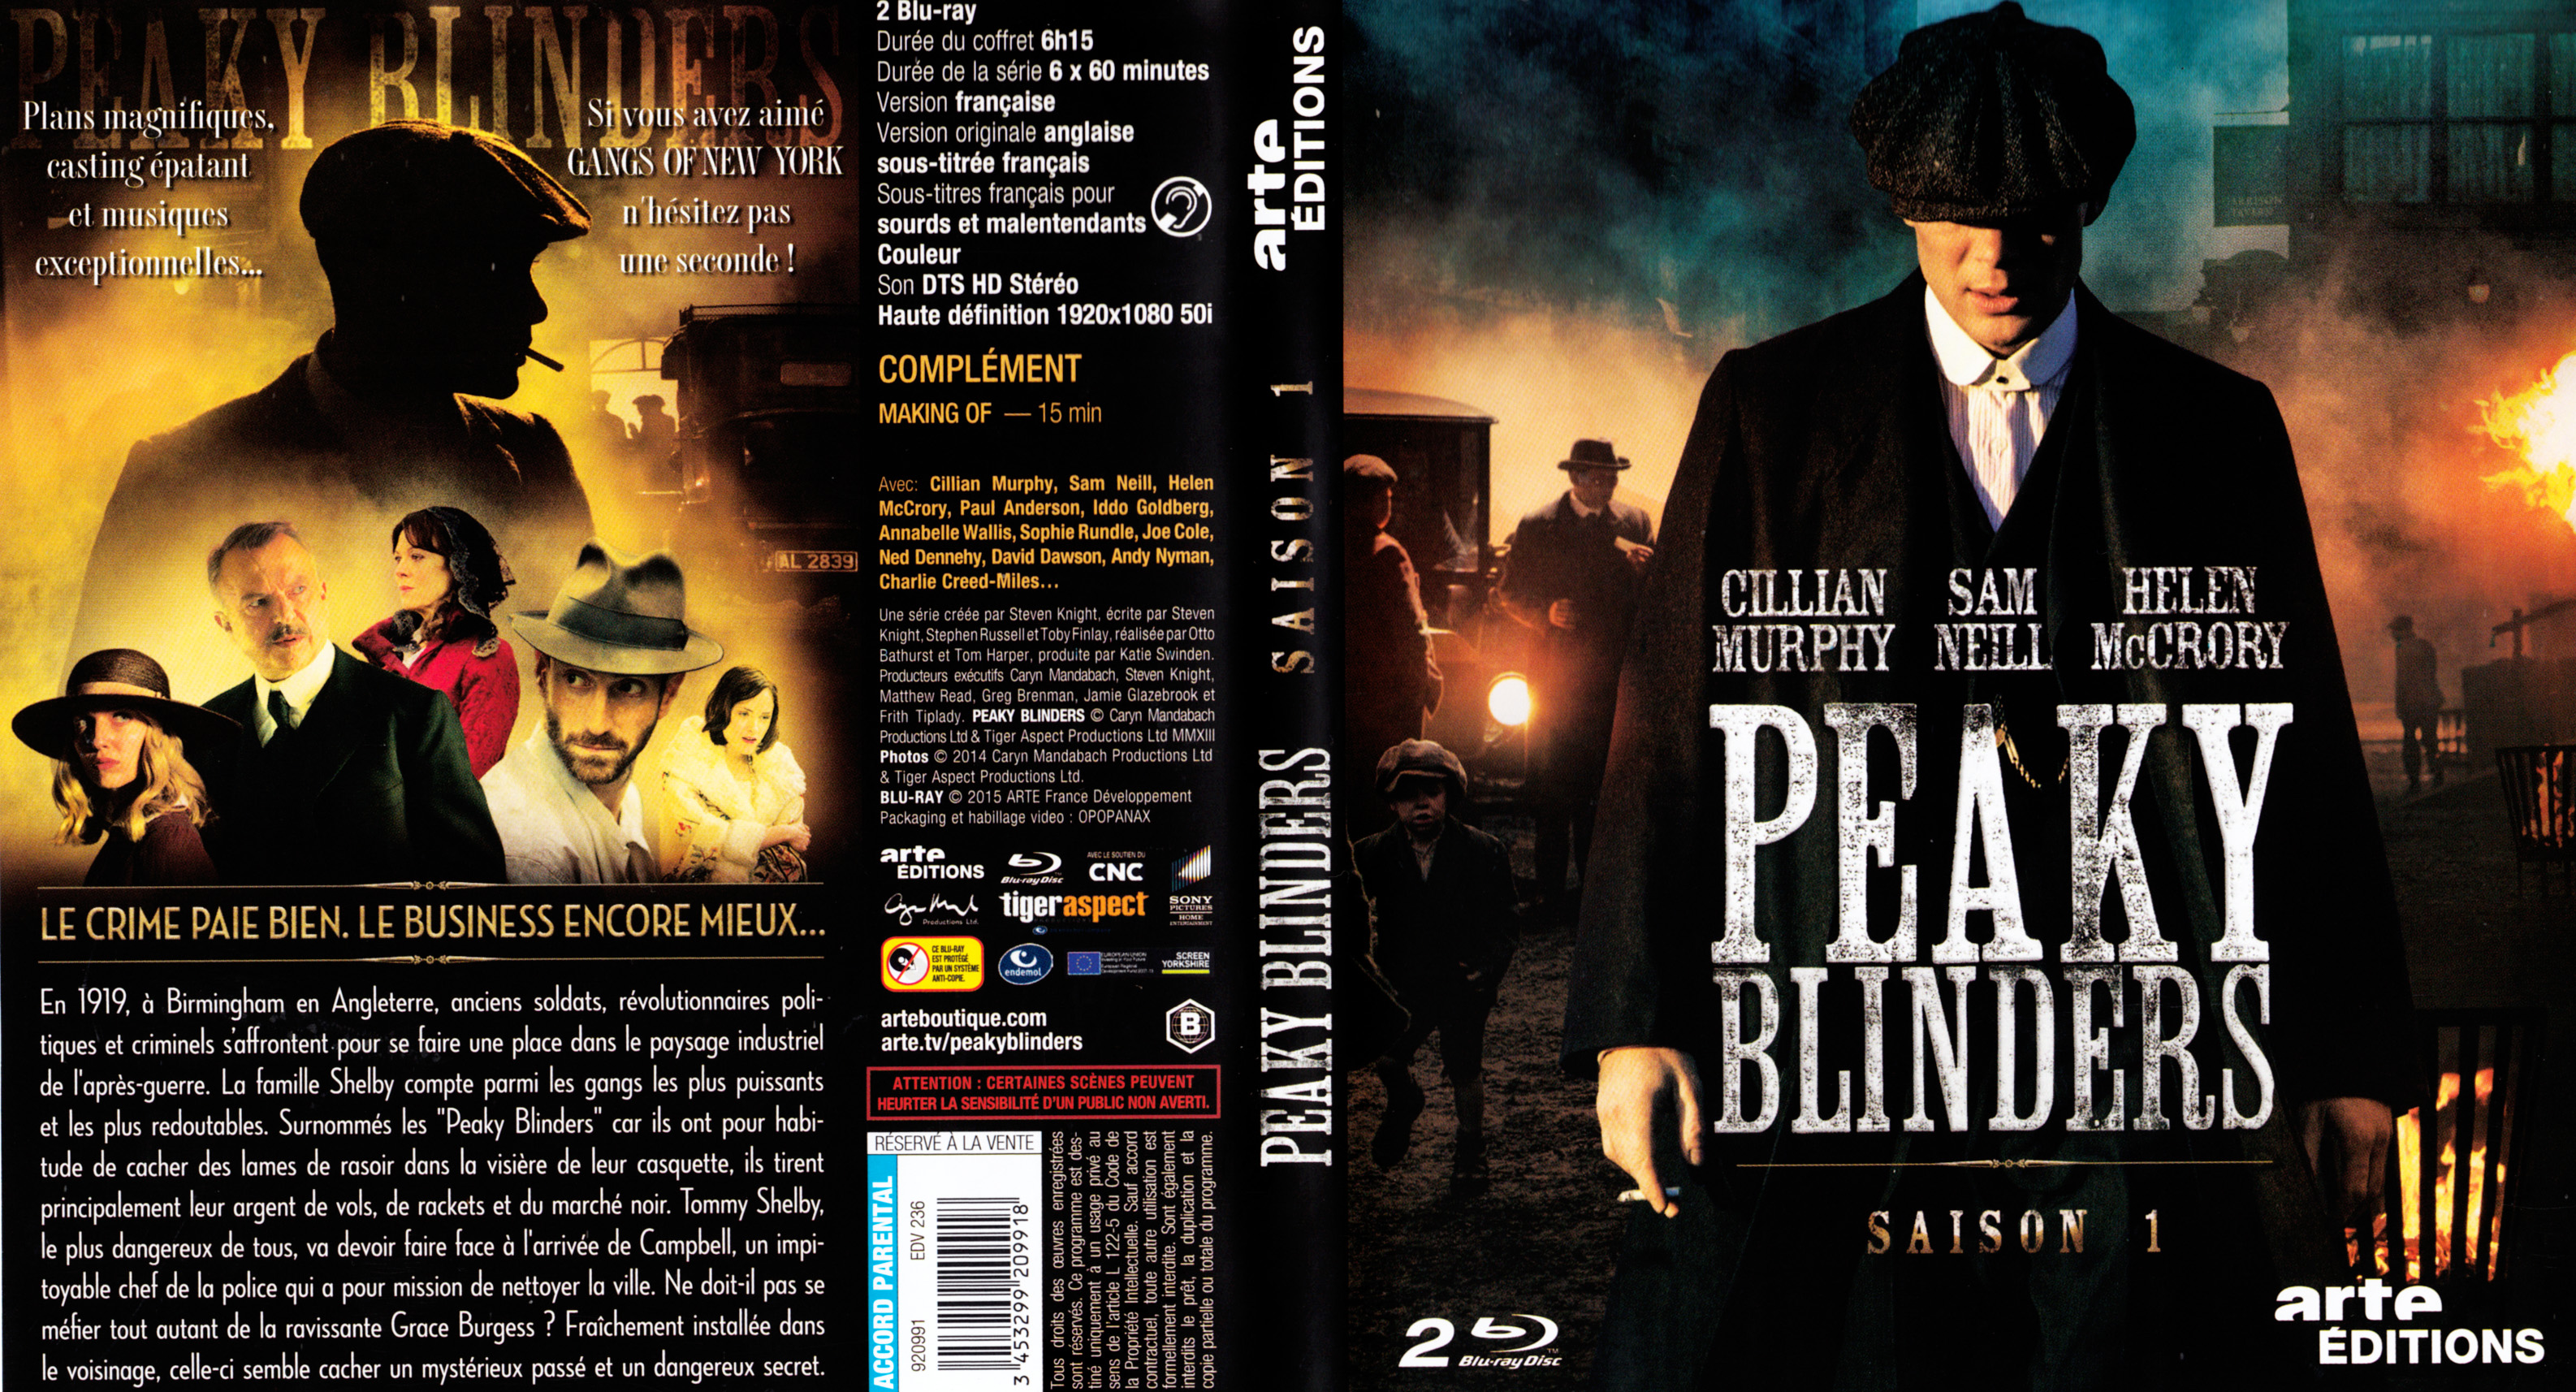 Jaquette Dvd De Peaky Blinders Saison 1 Blu Ray Cinéma Passion 